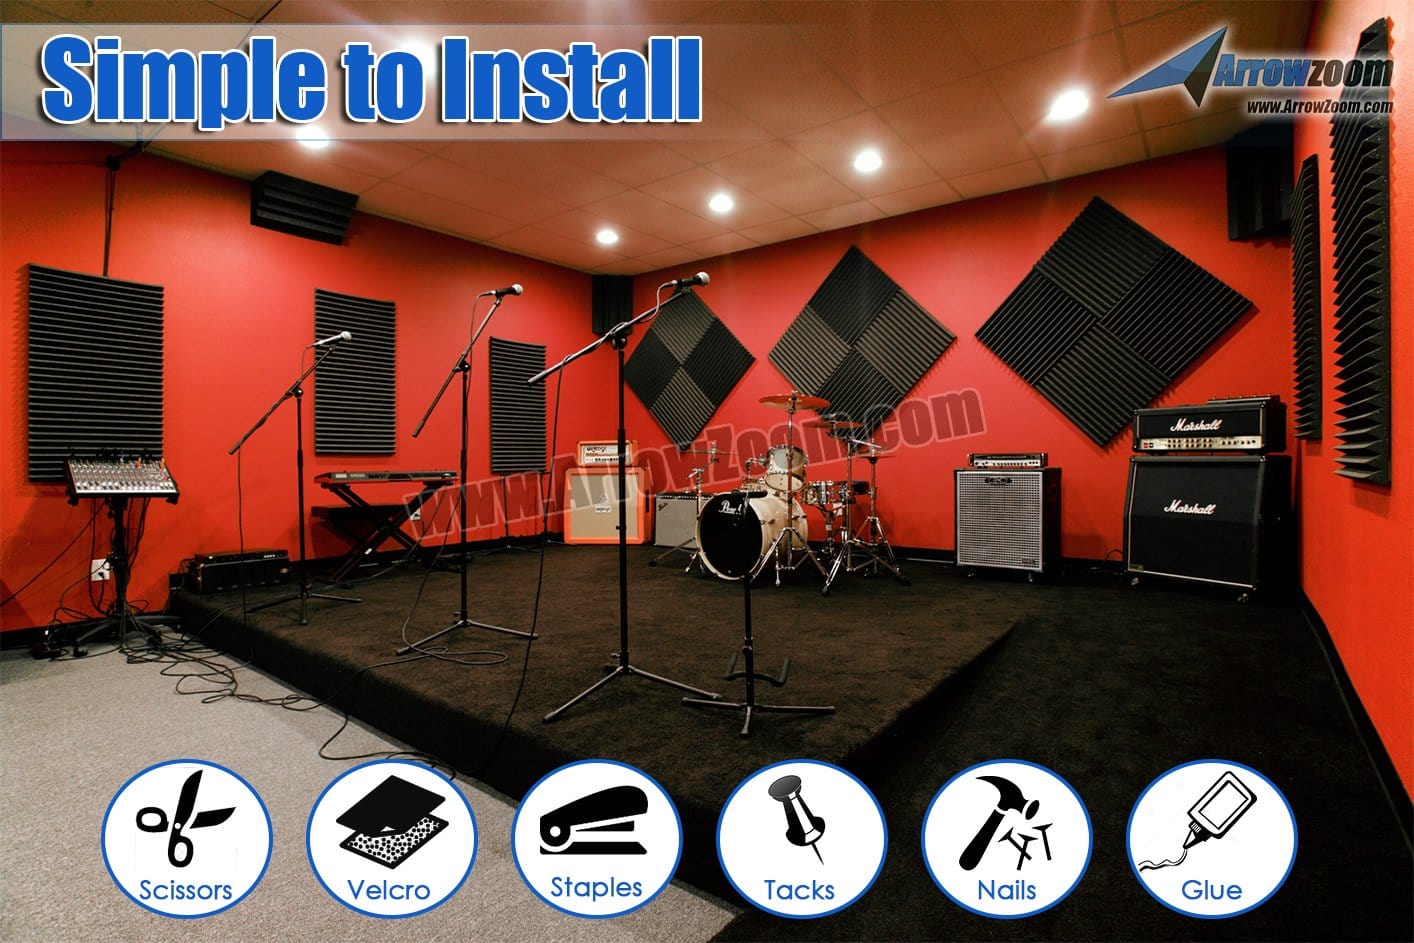 New 96 pcs Bundle Flat Bevel Tile Acoustic Panels Sound Absorption Studio Soundproof Foam 8 Colors KK1039